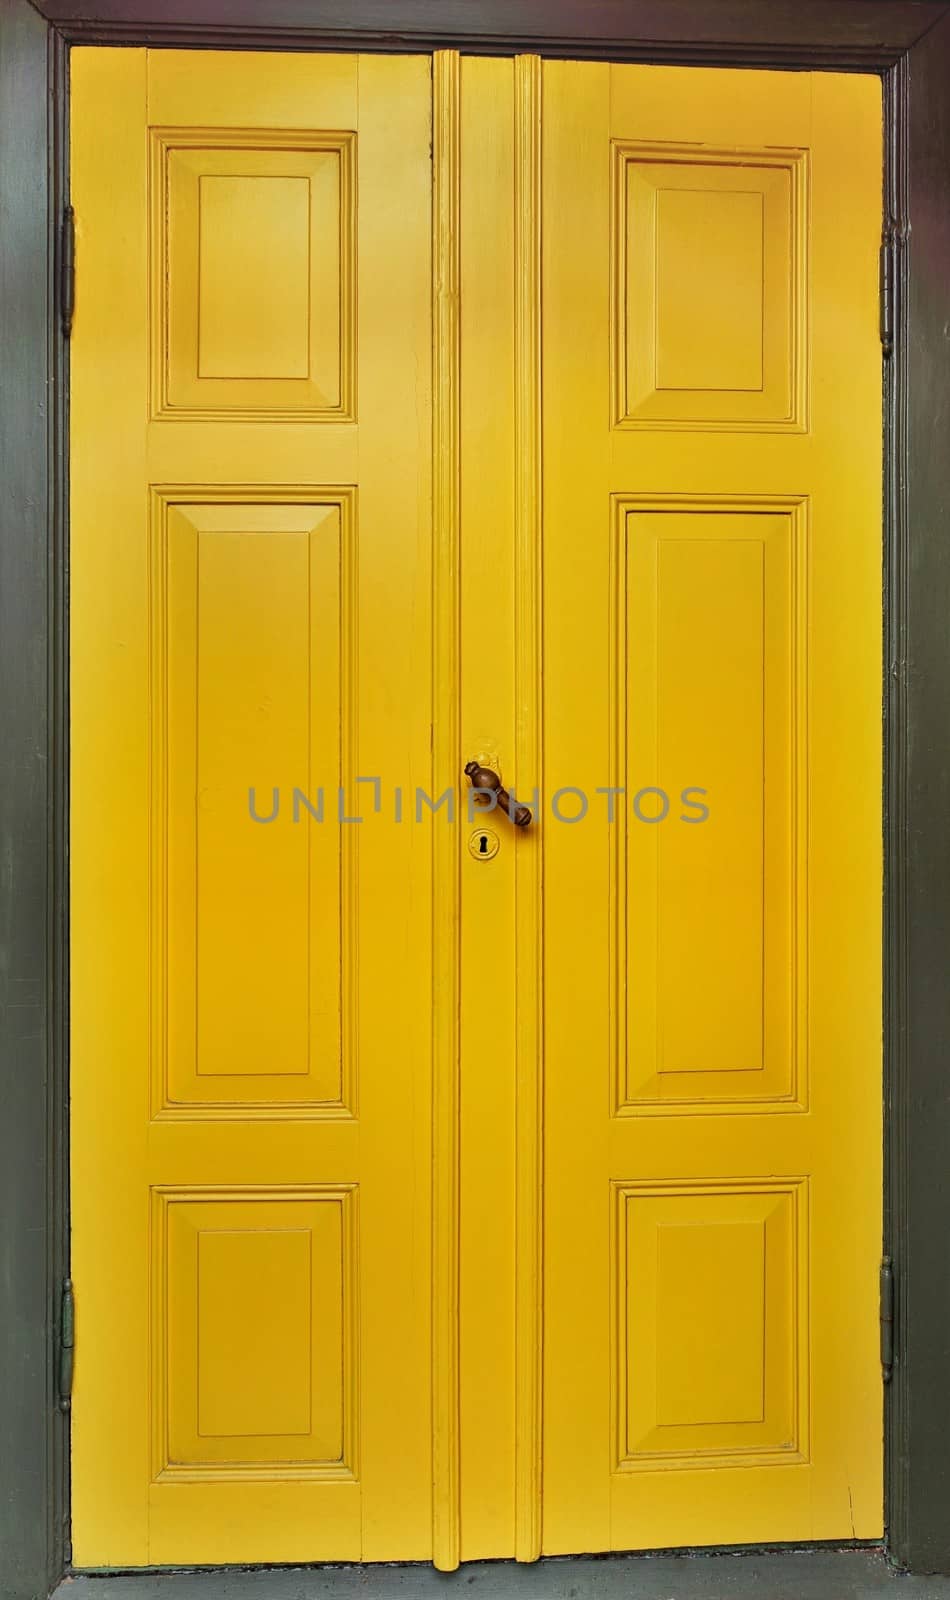 Yellow door with dark green wooden frame